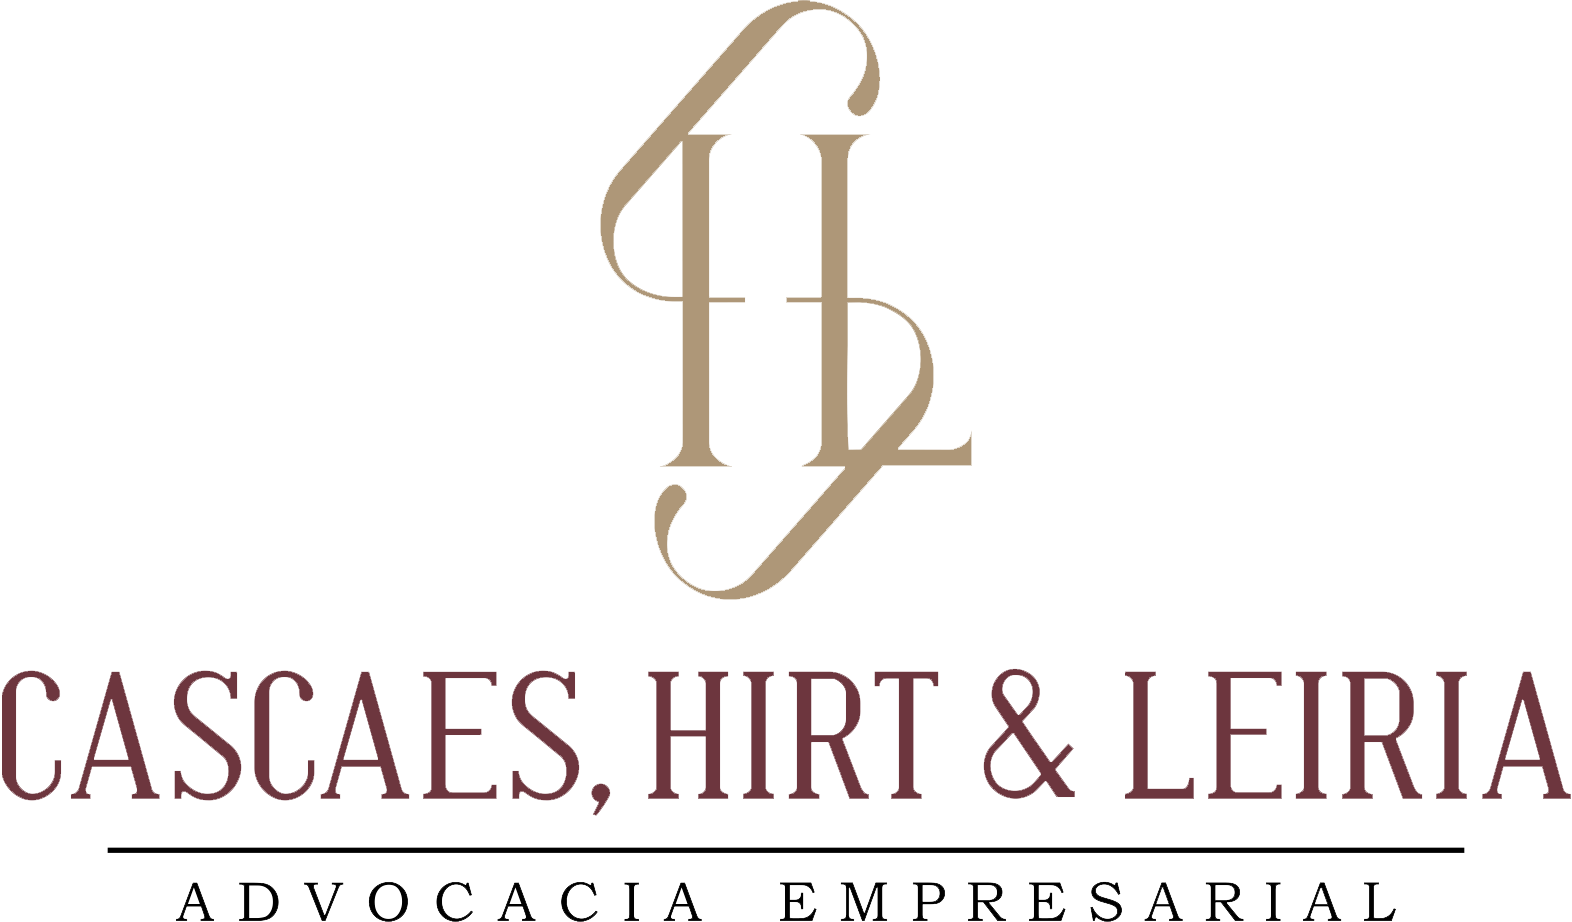 Logo Cascaes, Hirt & Leiria - Advocacia empresarial